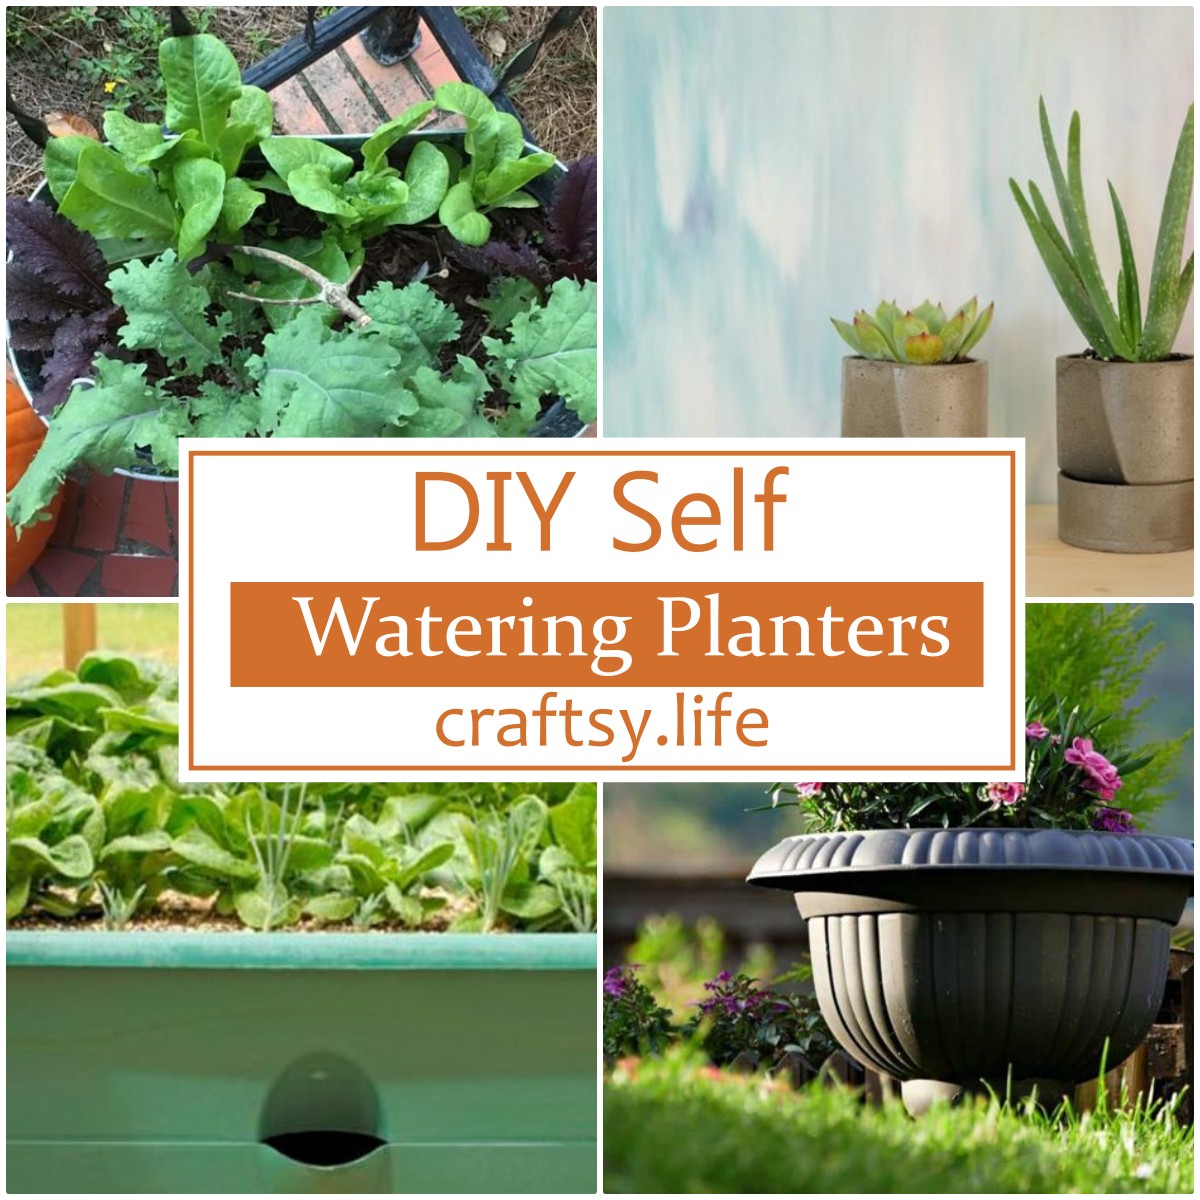 DIY Self Watering Planters